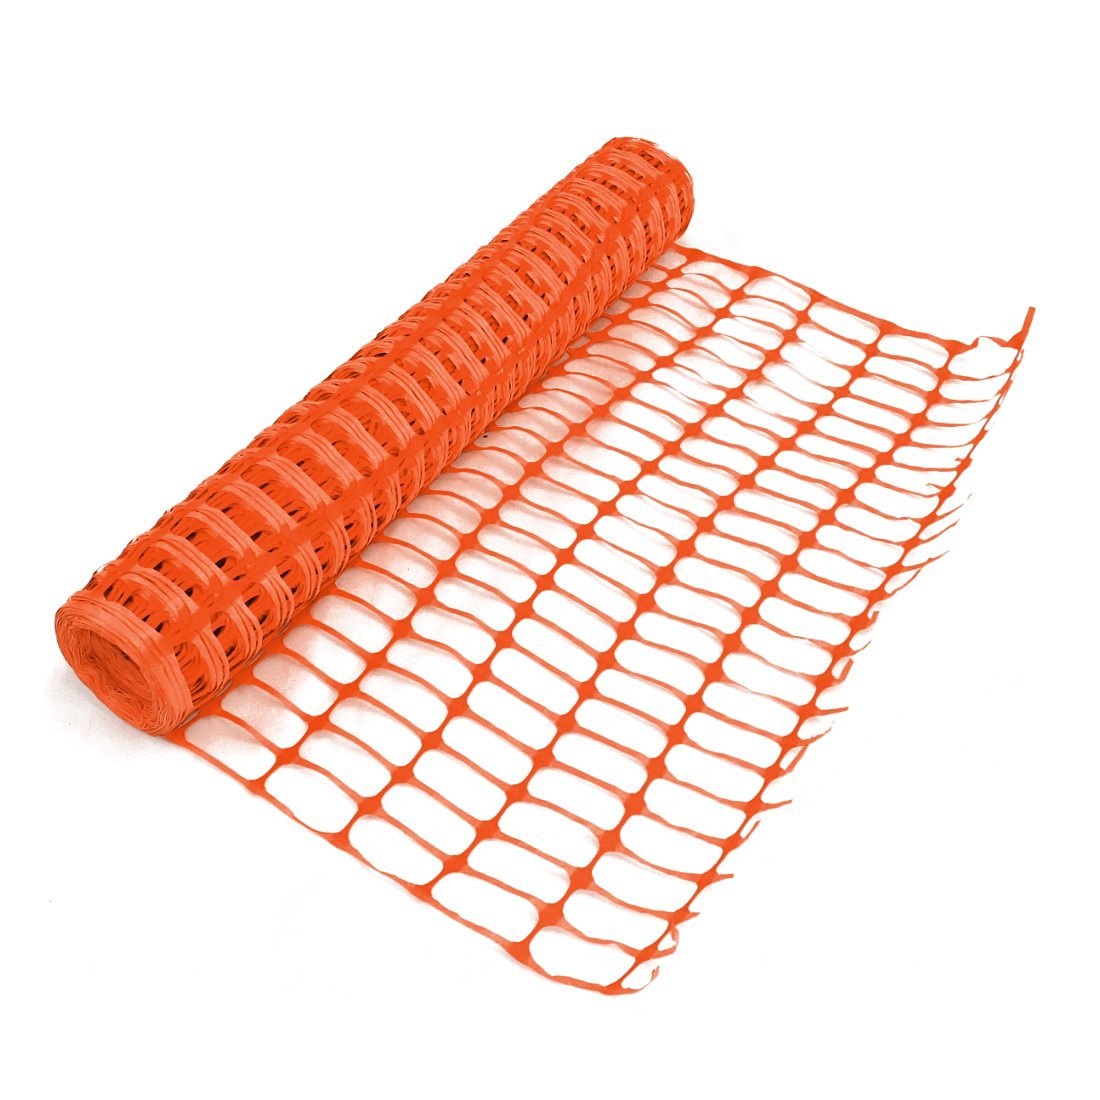 Heavy Duty Orange Safety Barrier Mesh Fencing 1mtr x 30mtr